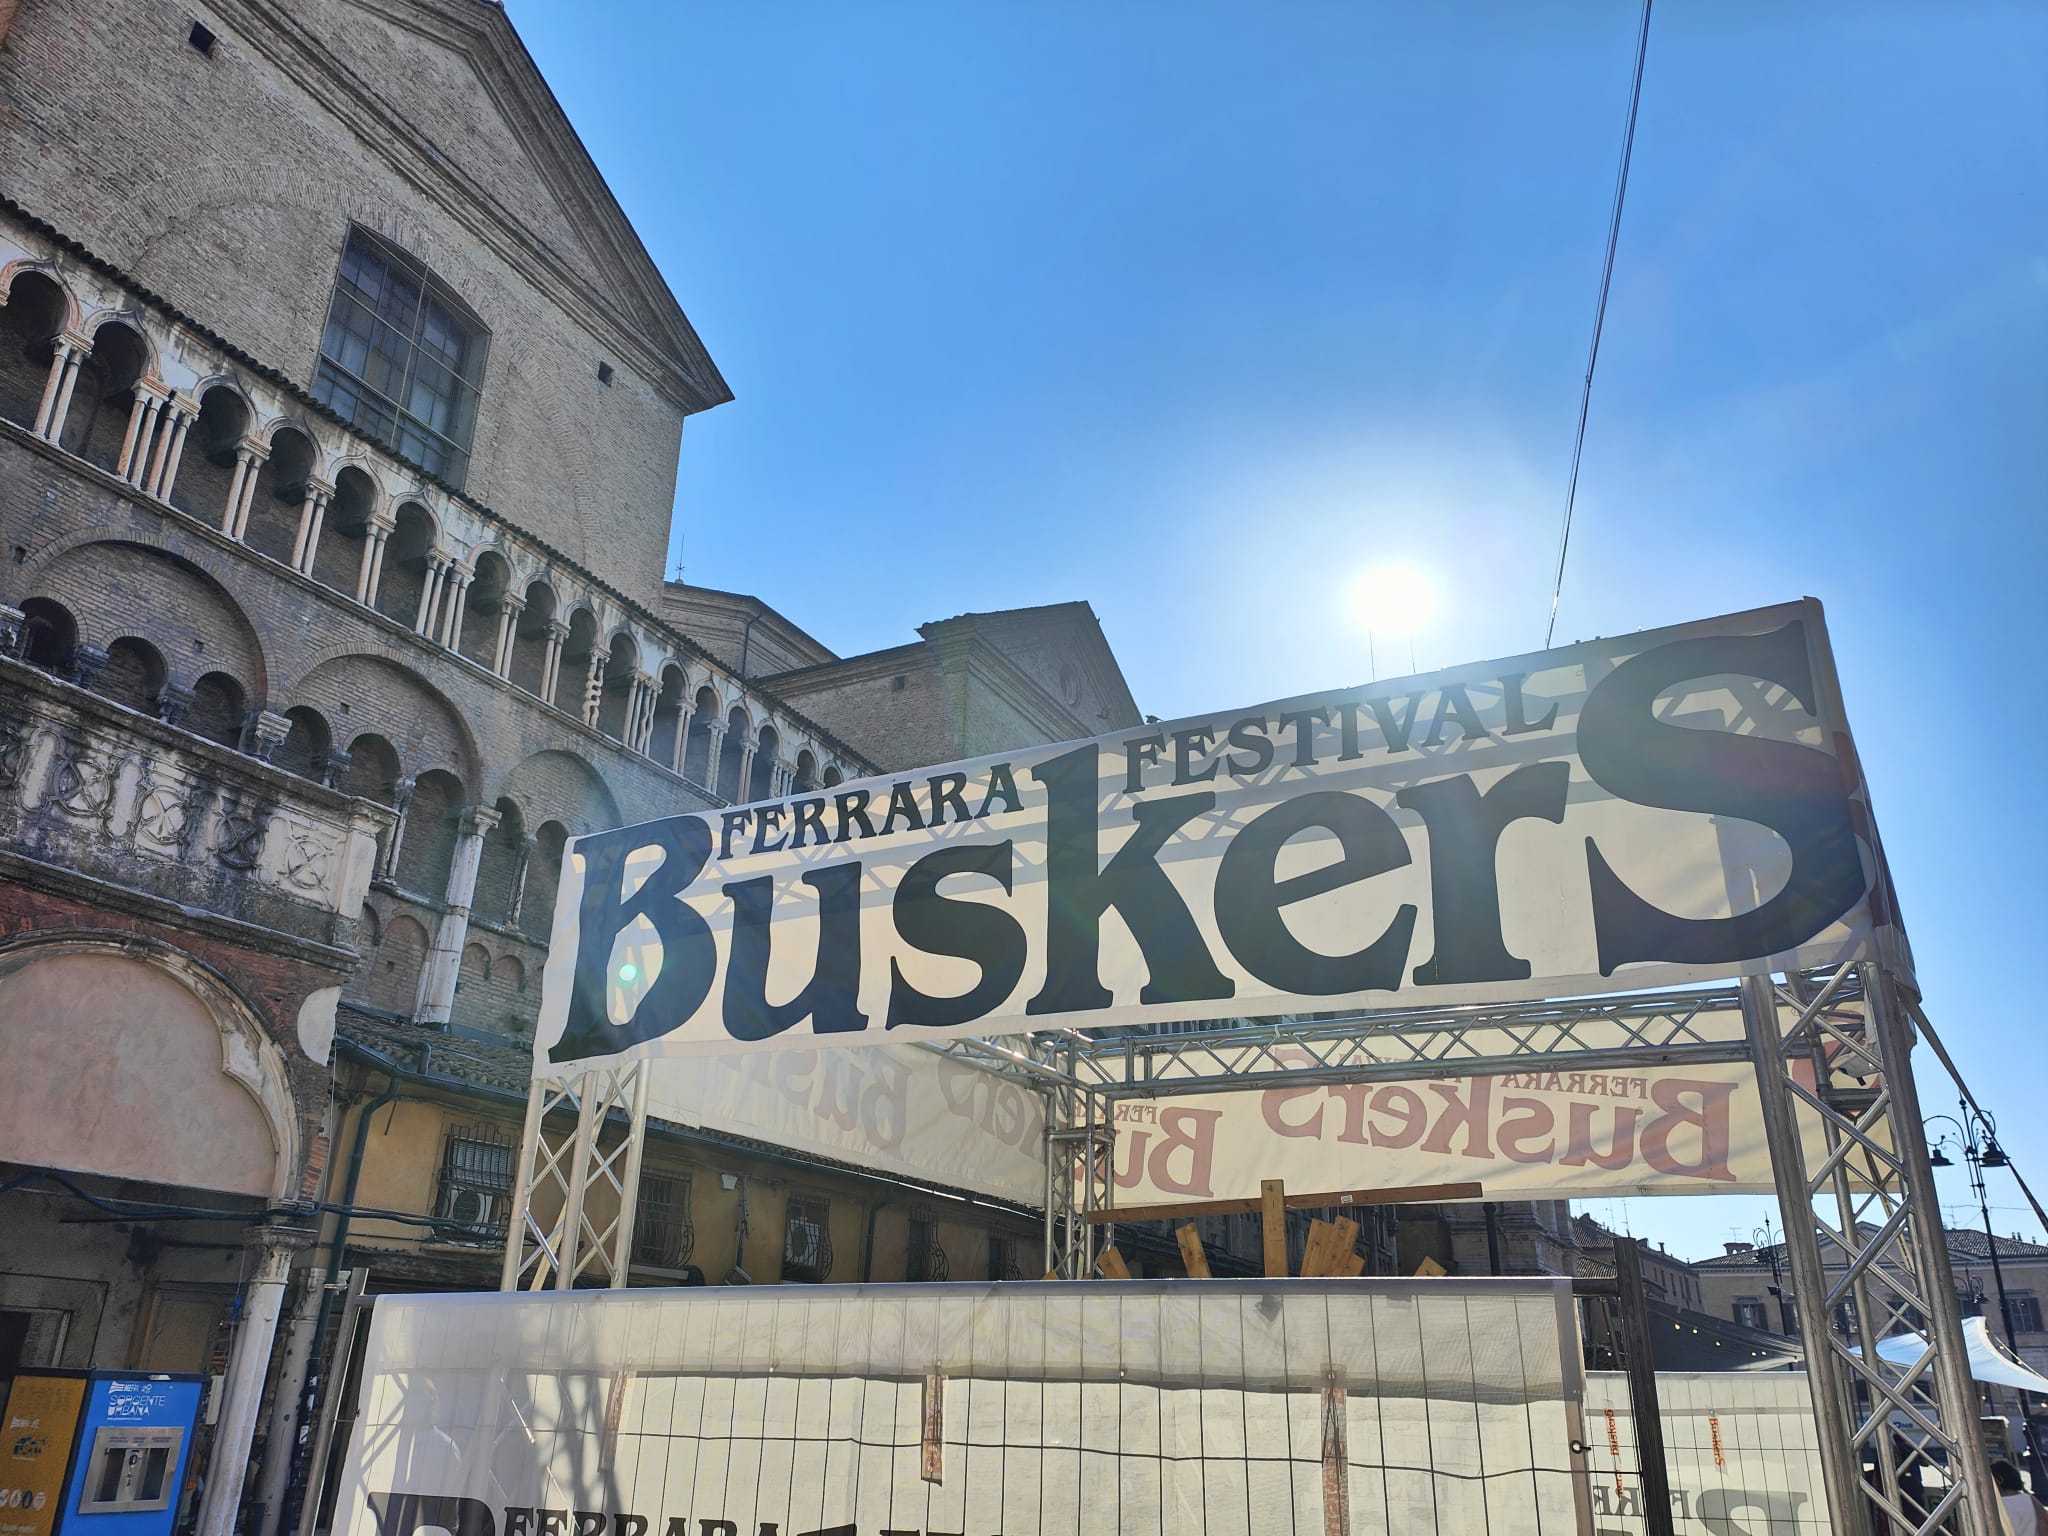 A Ferrara (ri)parte il Buskers festival: 250 spettacoli in 5 giorni